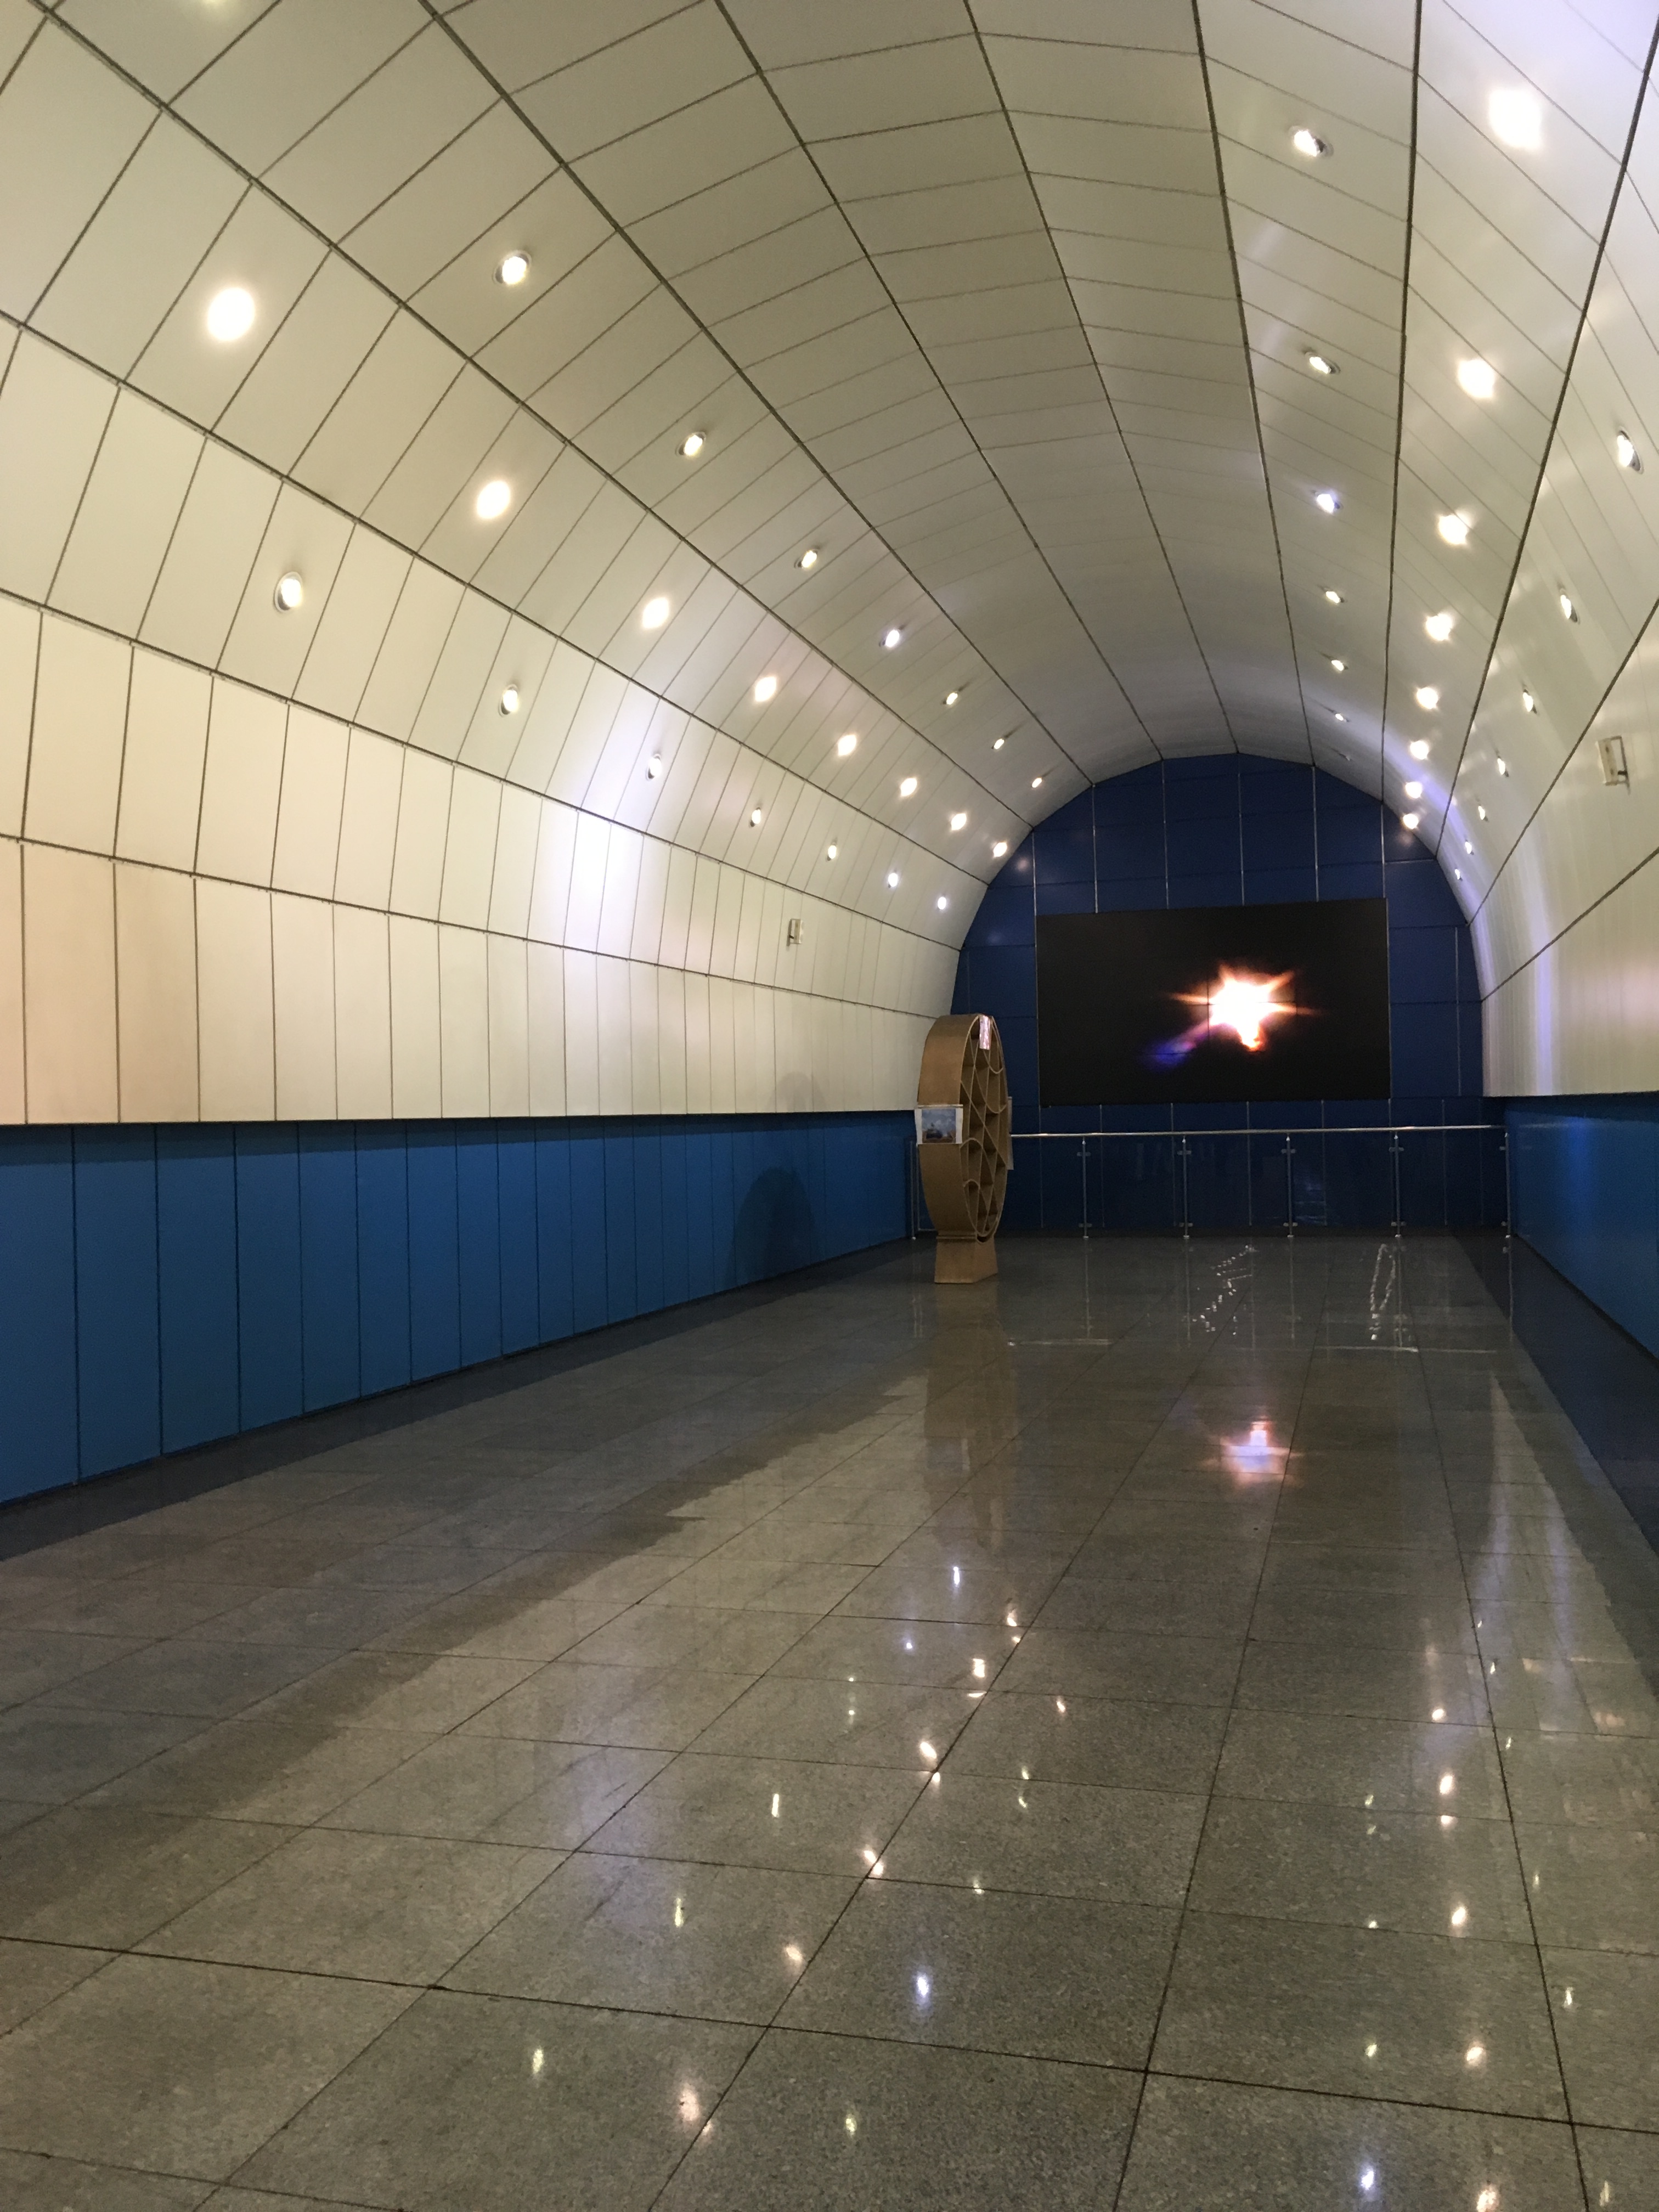 Baikonur Station